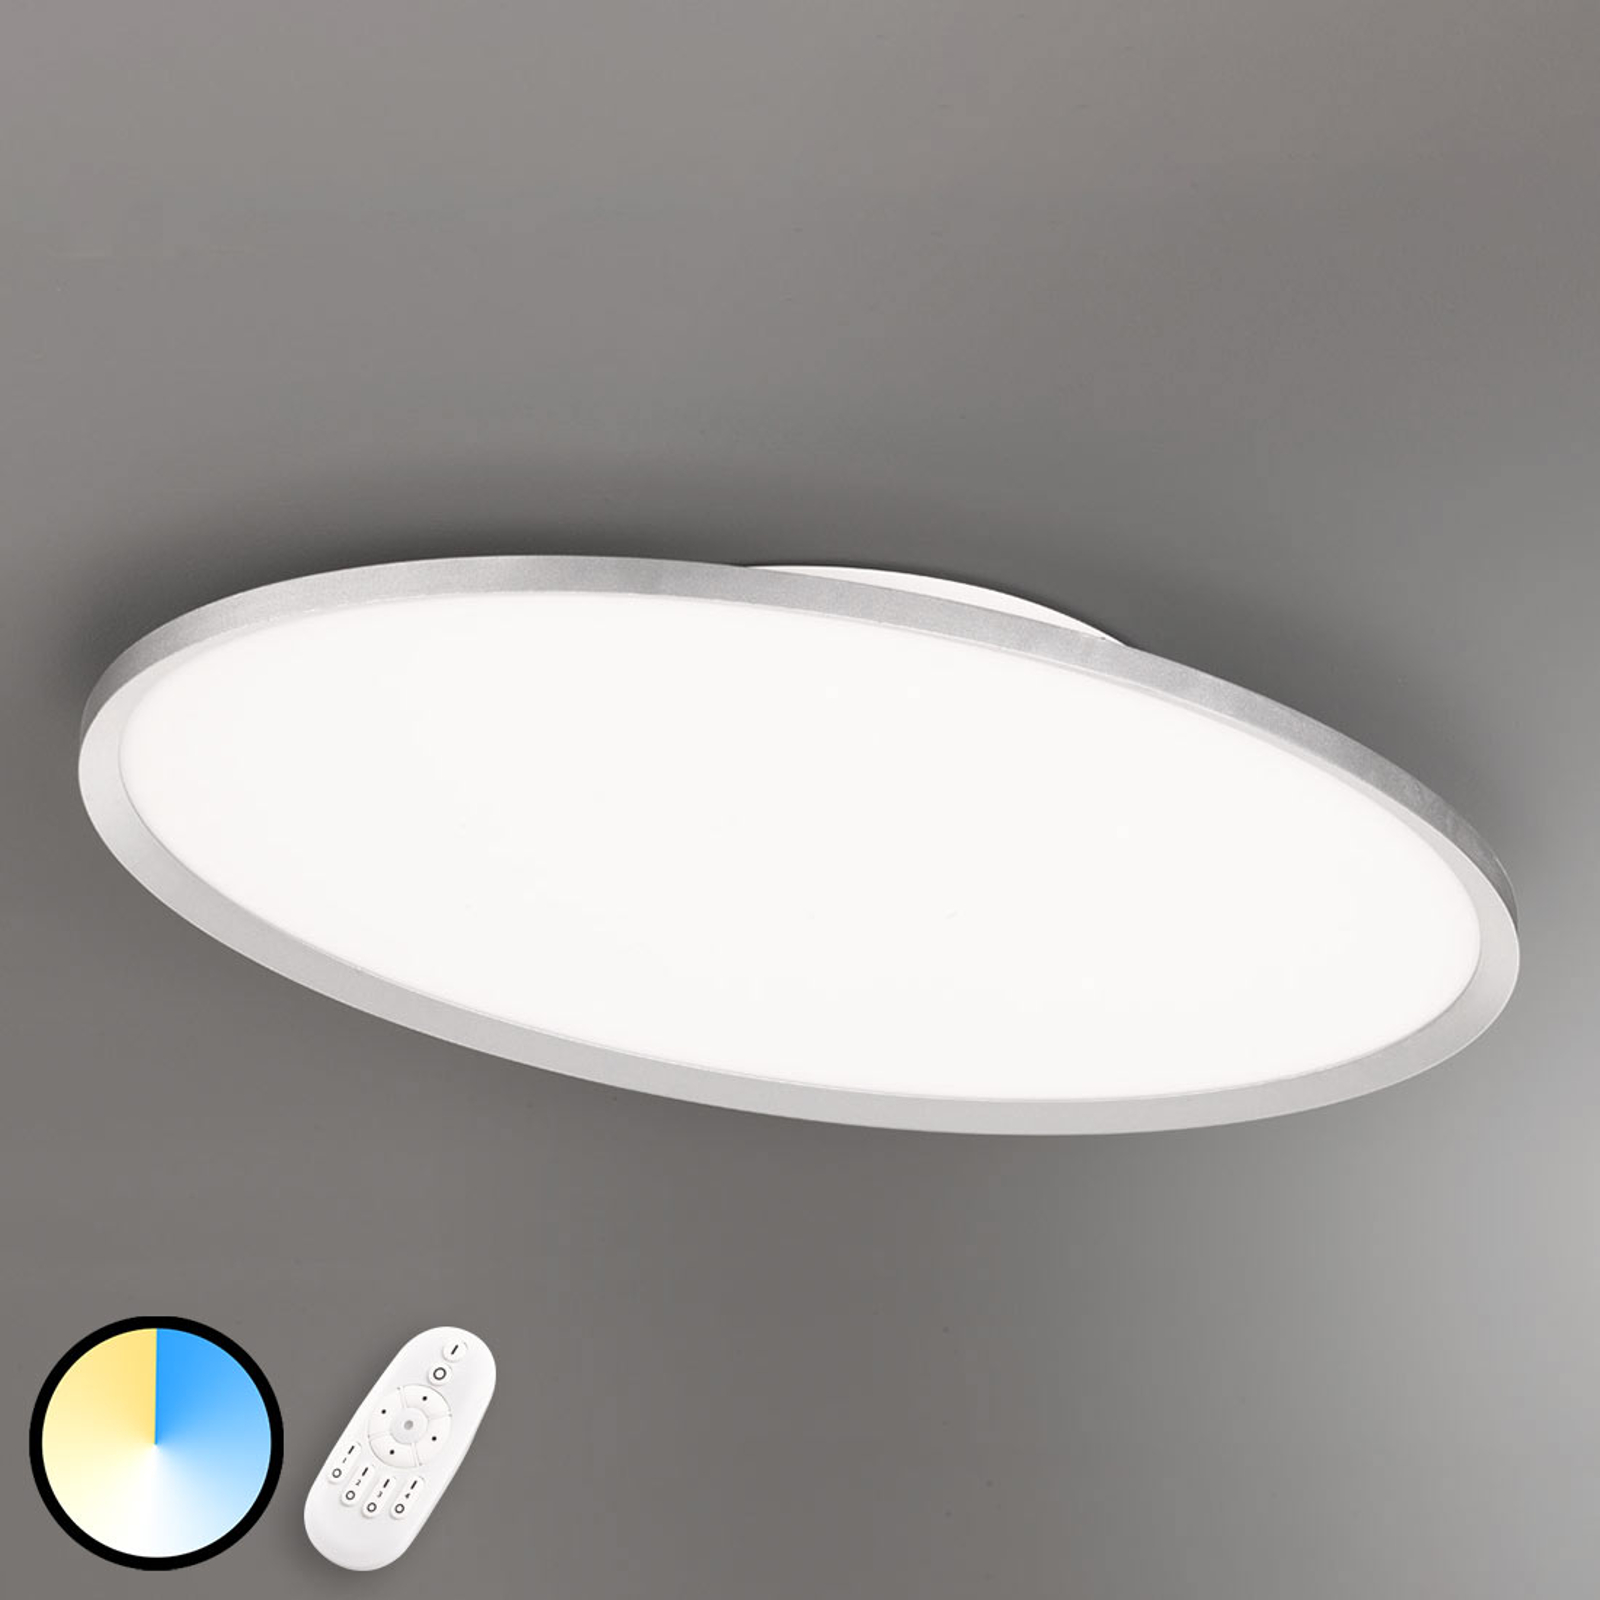 Monitoimintainen LED-kattolamppu Torrance, 80 cm